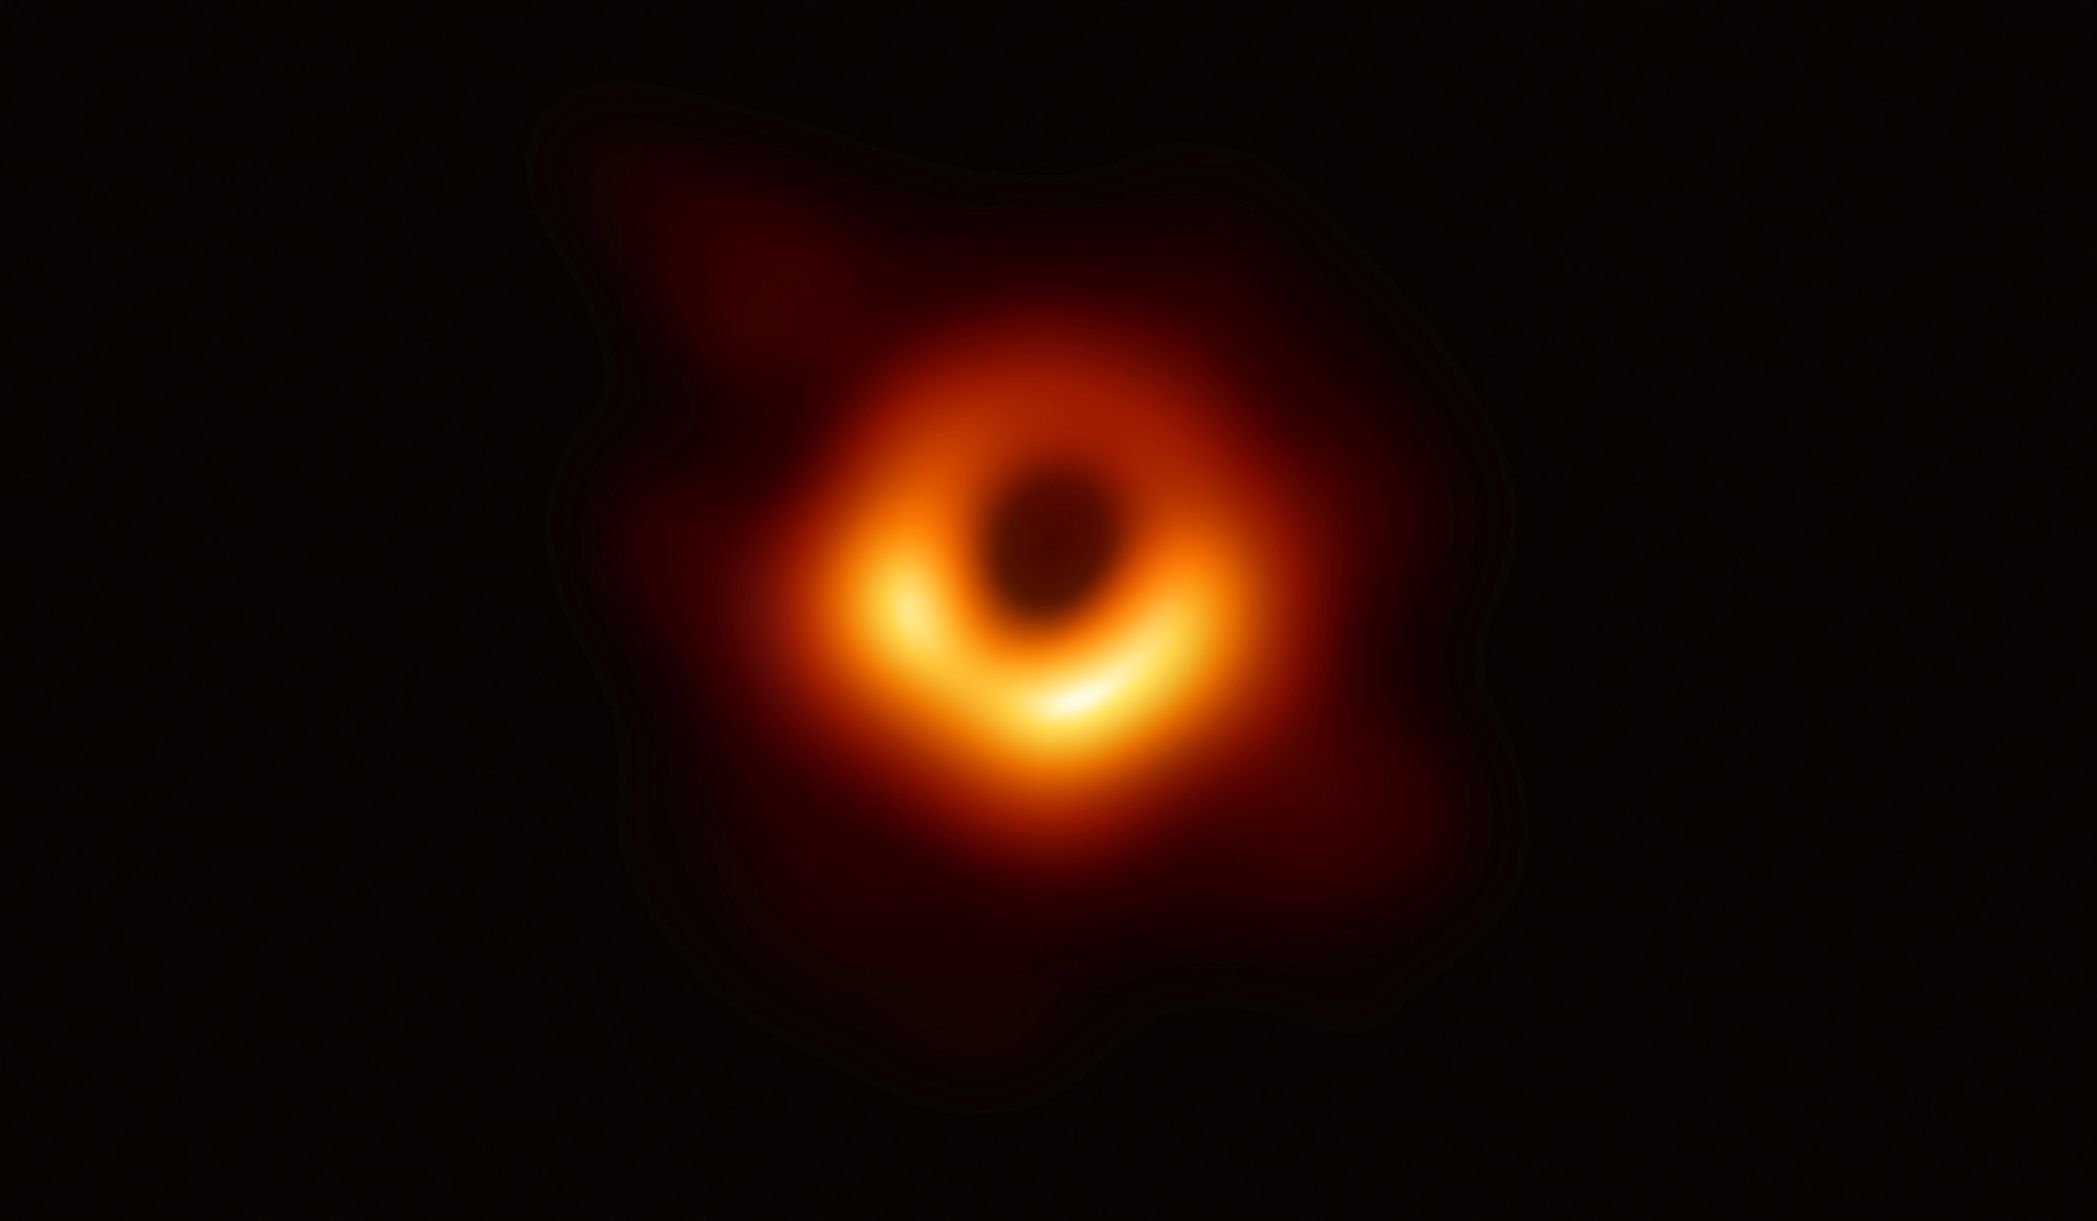 Černá díra - první reálný snímek